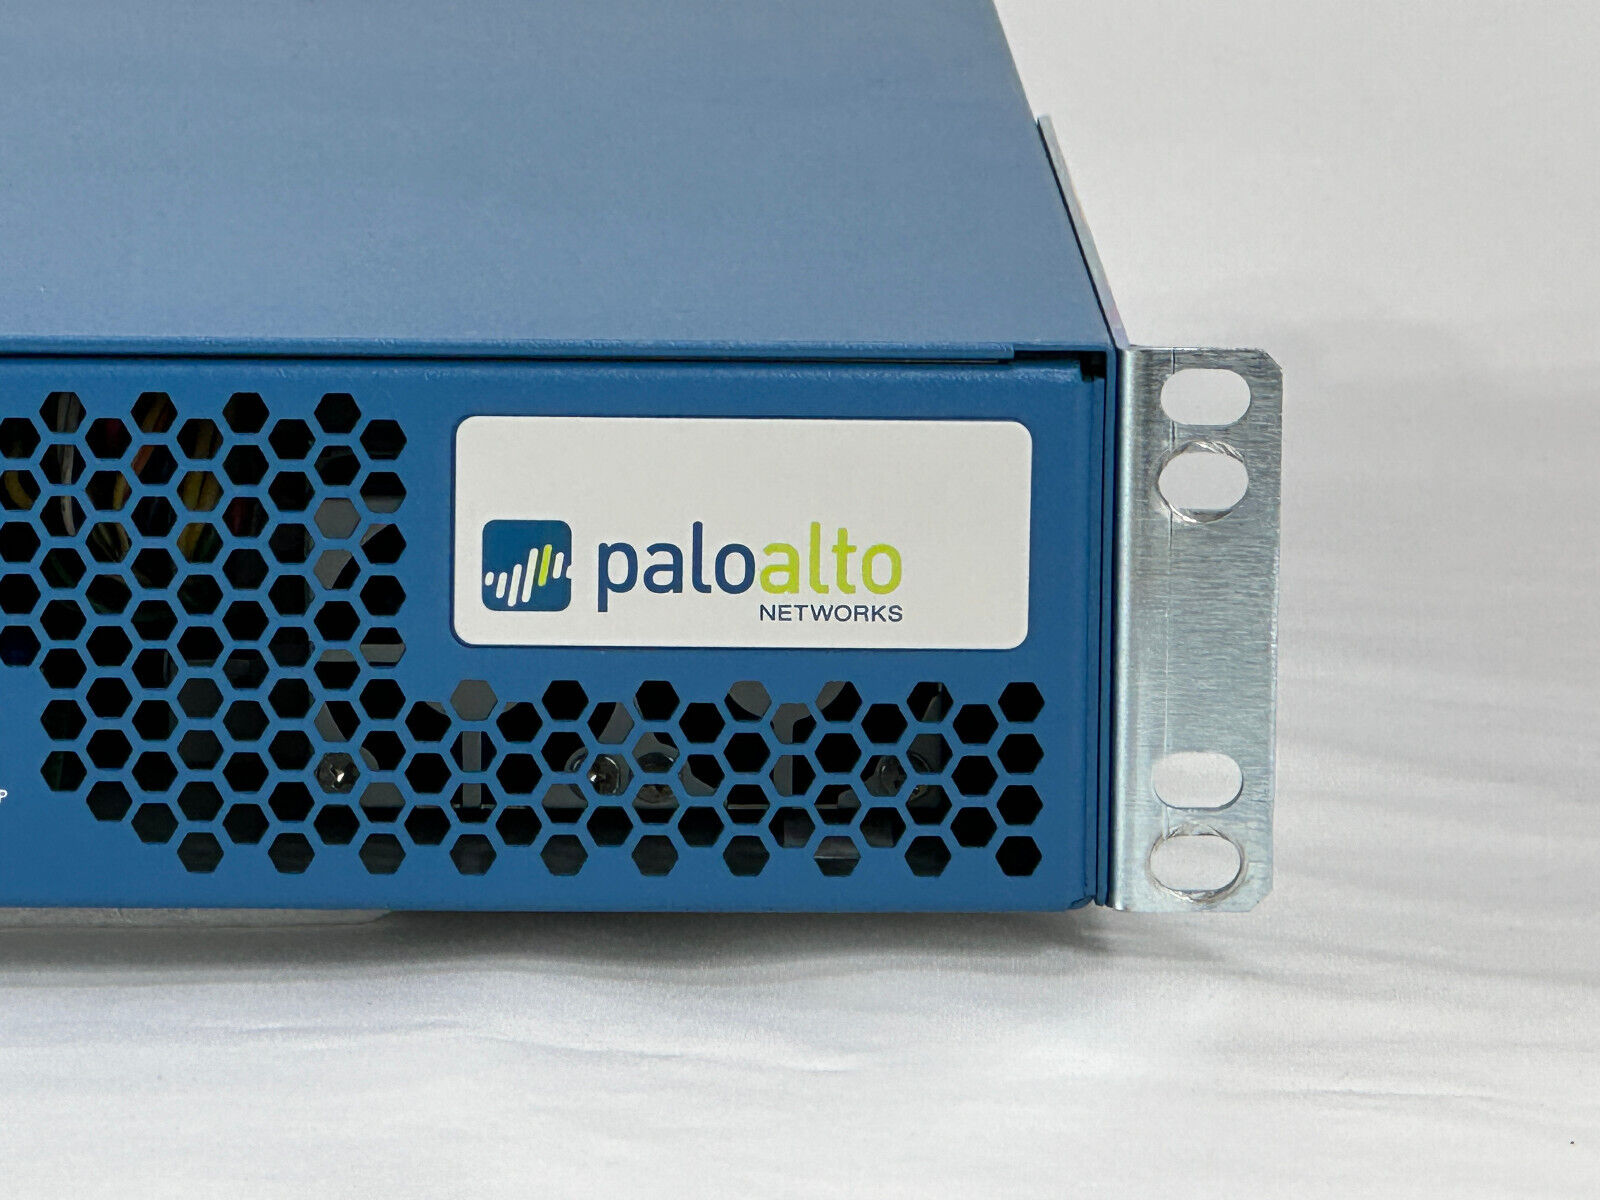 Palo Alto PA-3060 DPS-500WB-2 B High-Speed Internet Gateway Router Firewall VPN 1/10GbE 2x PSU.